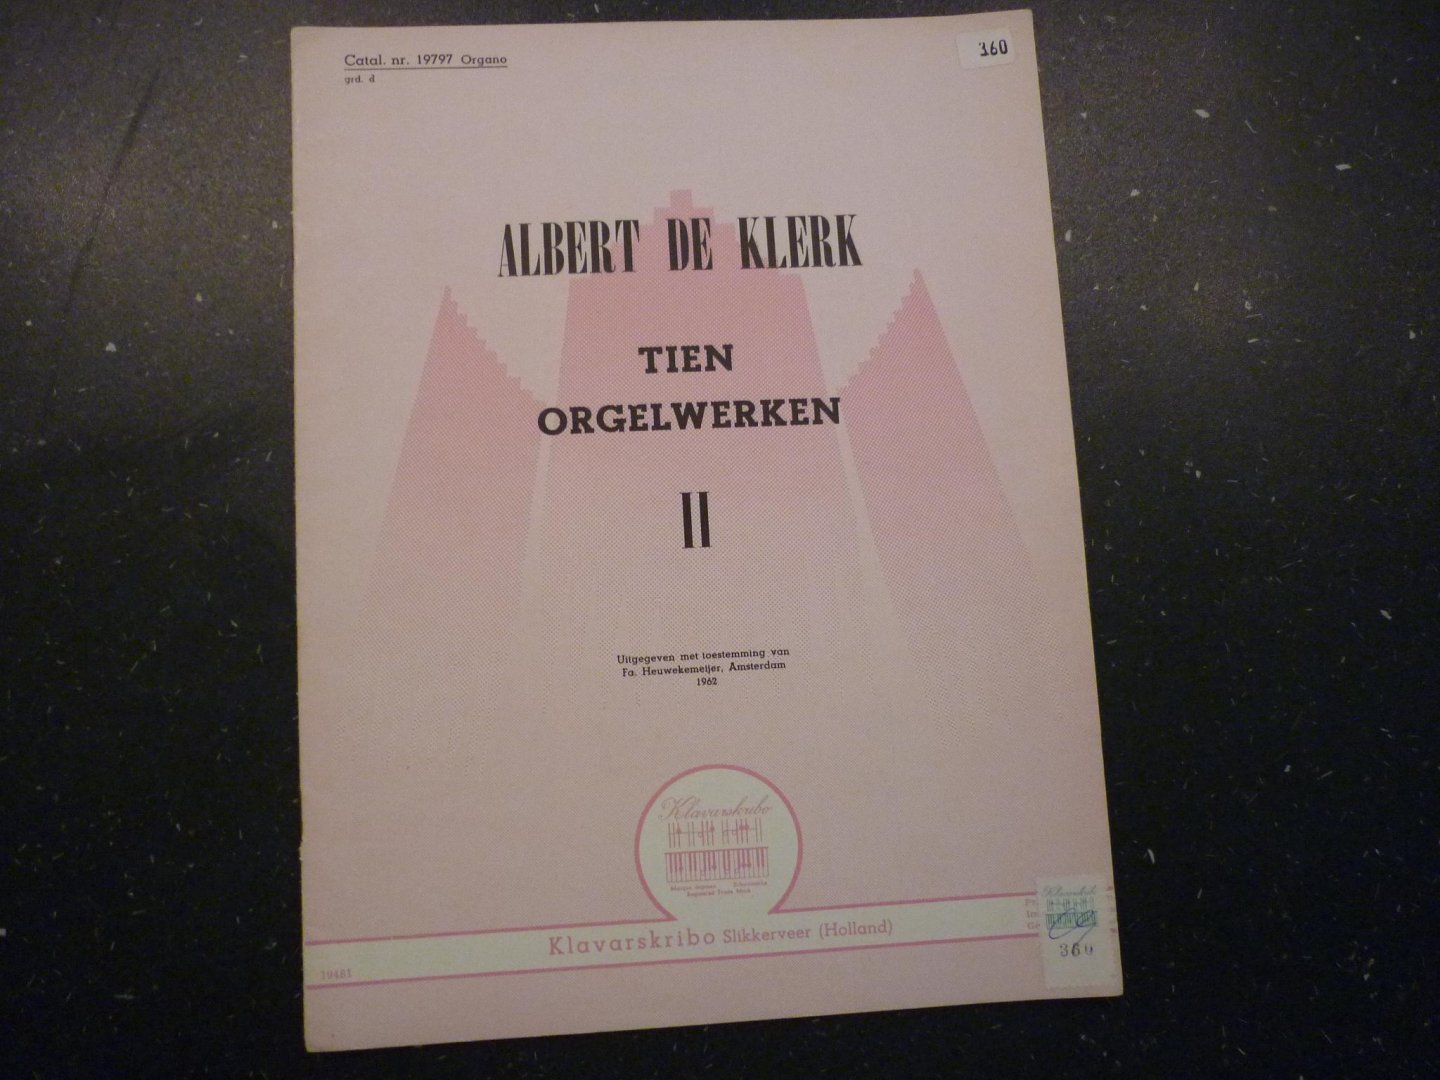 Klerk; Albert de - Tien Orgelwerken - Deel II  /  Klavarskribo